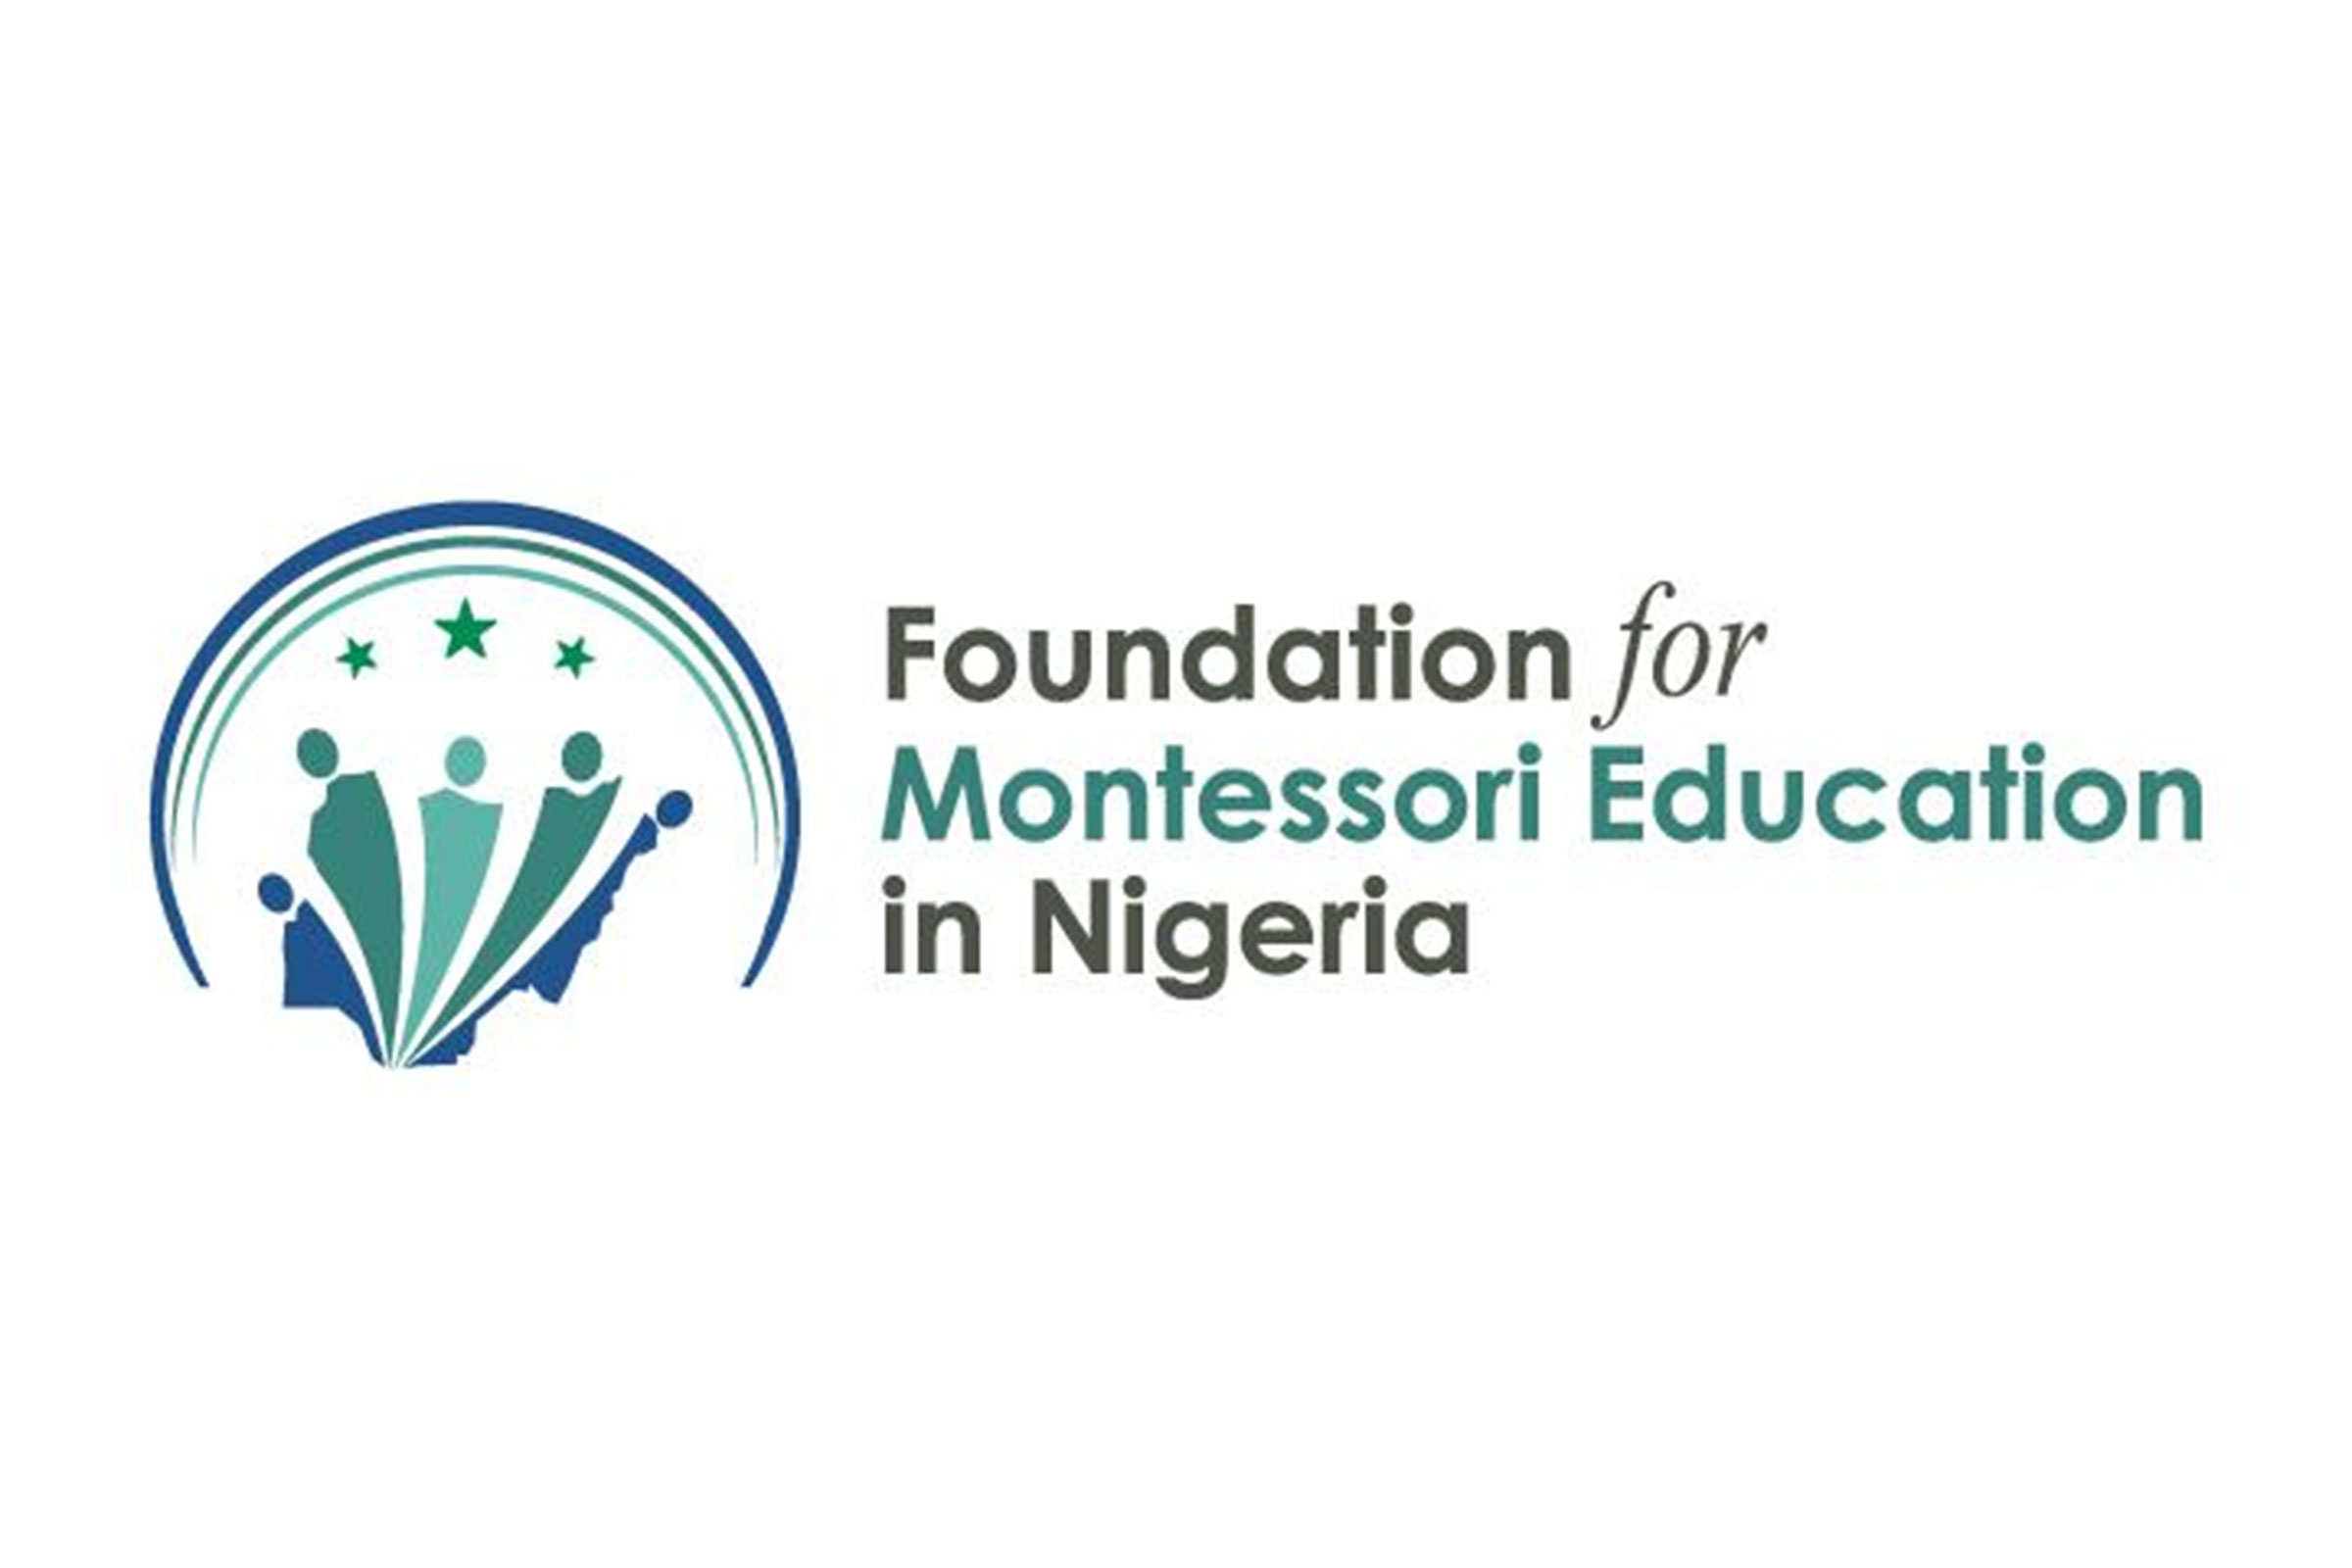 Foundation for Montessori Education in Nigeria logo